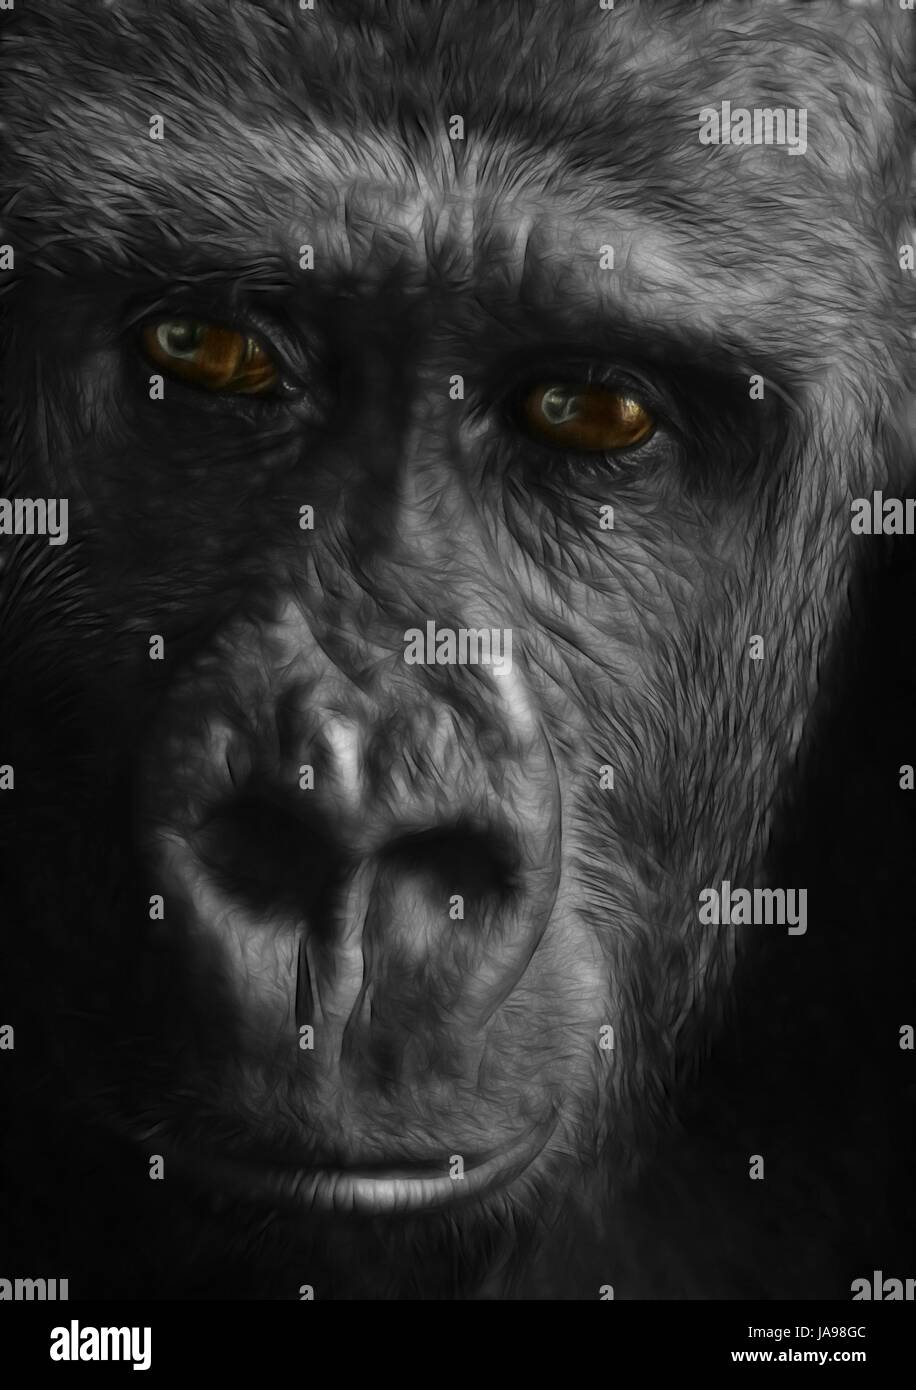 Portrait, animaux, singe, yeux, illustration, gorille, dessin, photo, photo, Banque D'Images